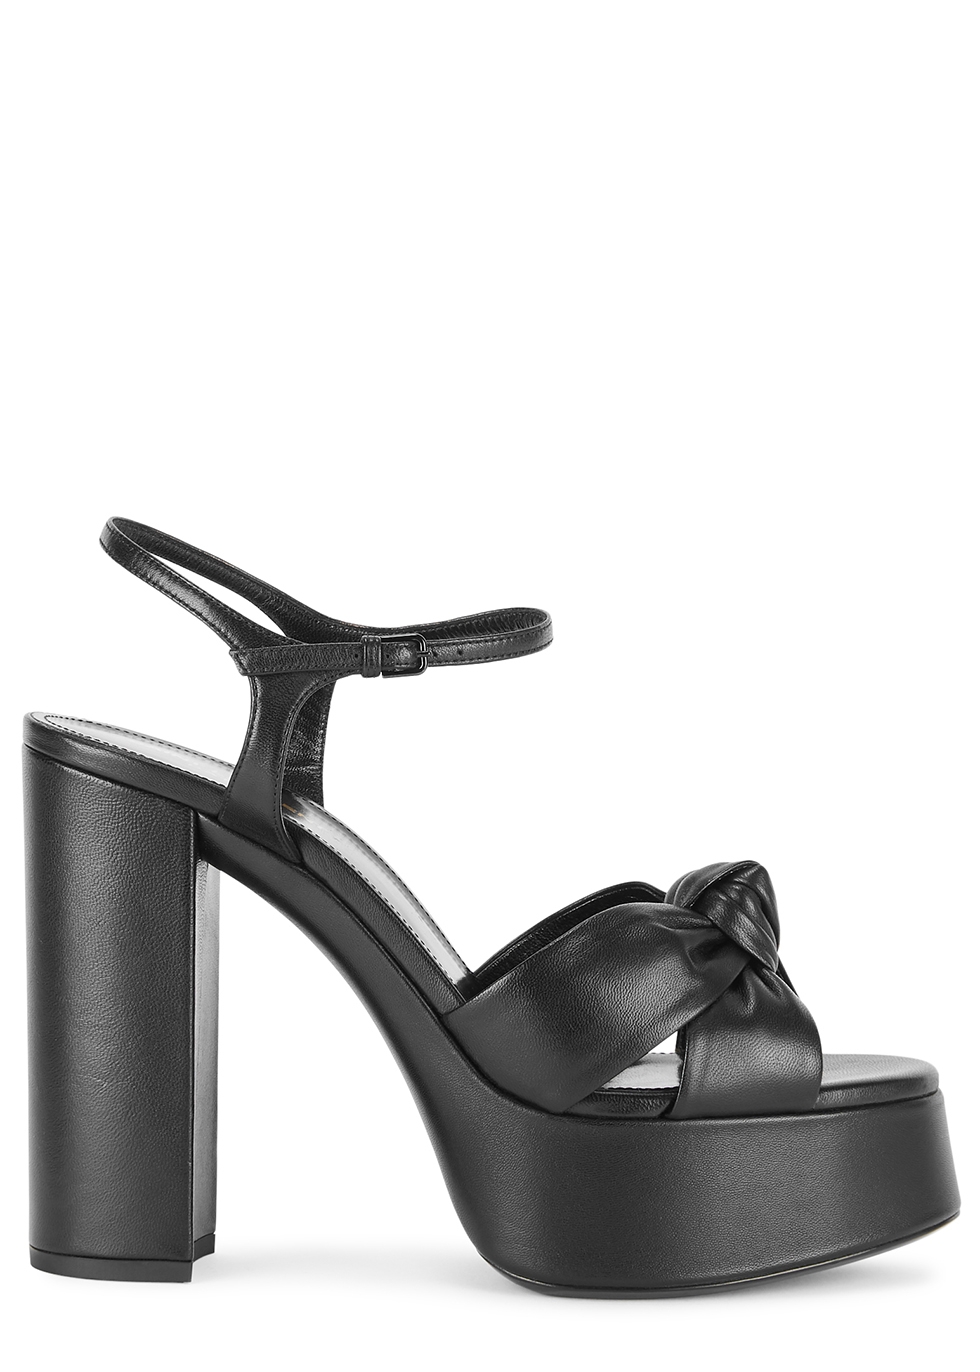 Saint Laurent Bianca 130 black leather platform sandals - Harvey Nichols